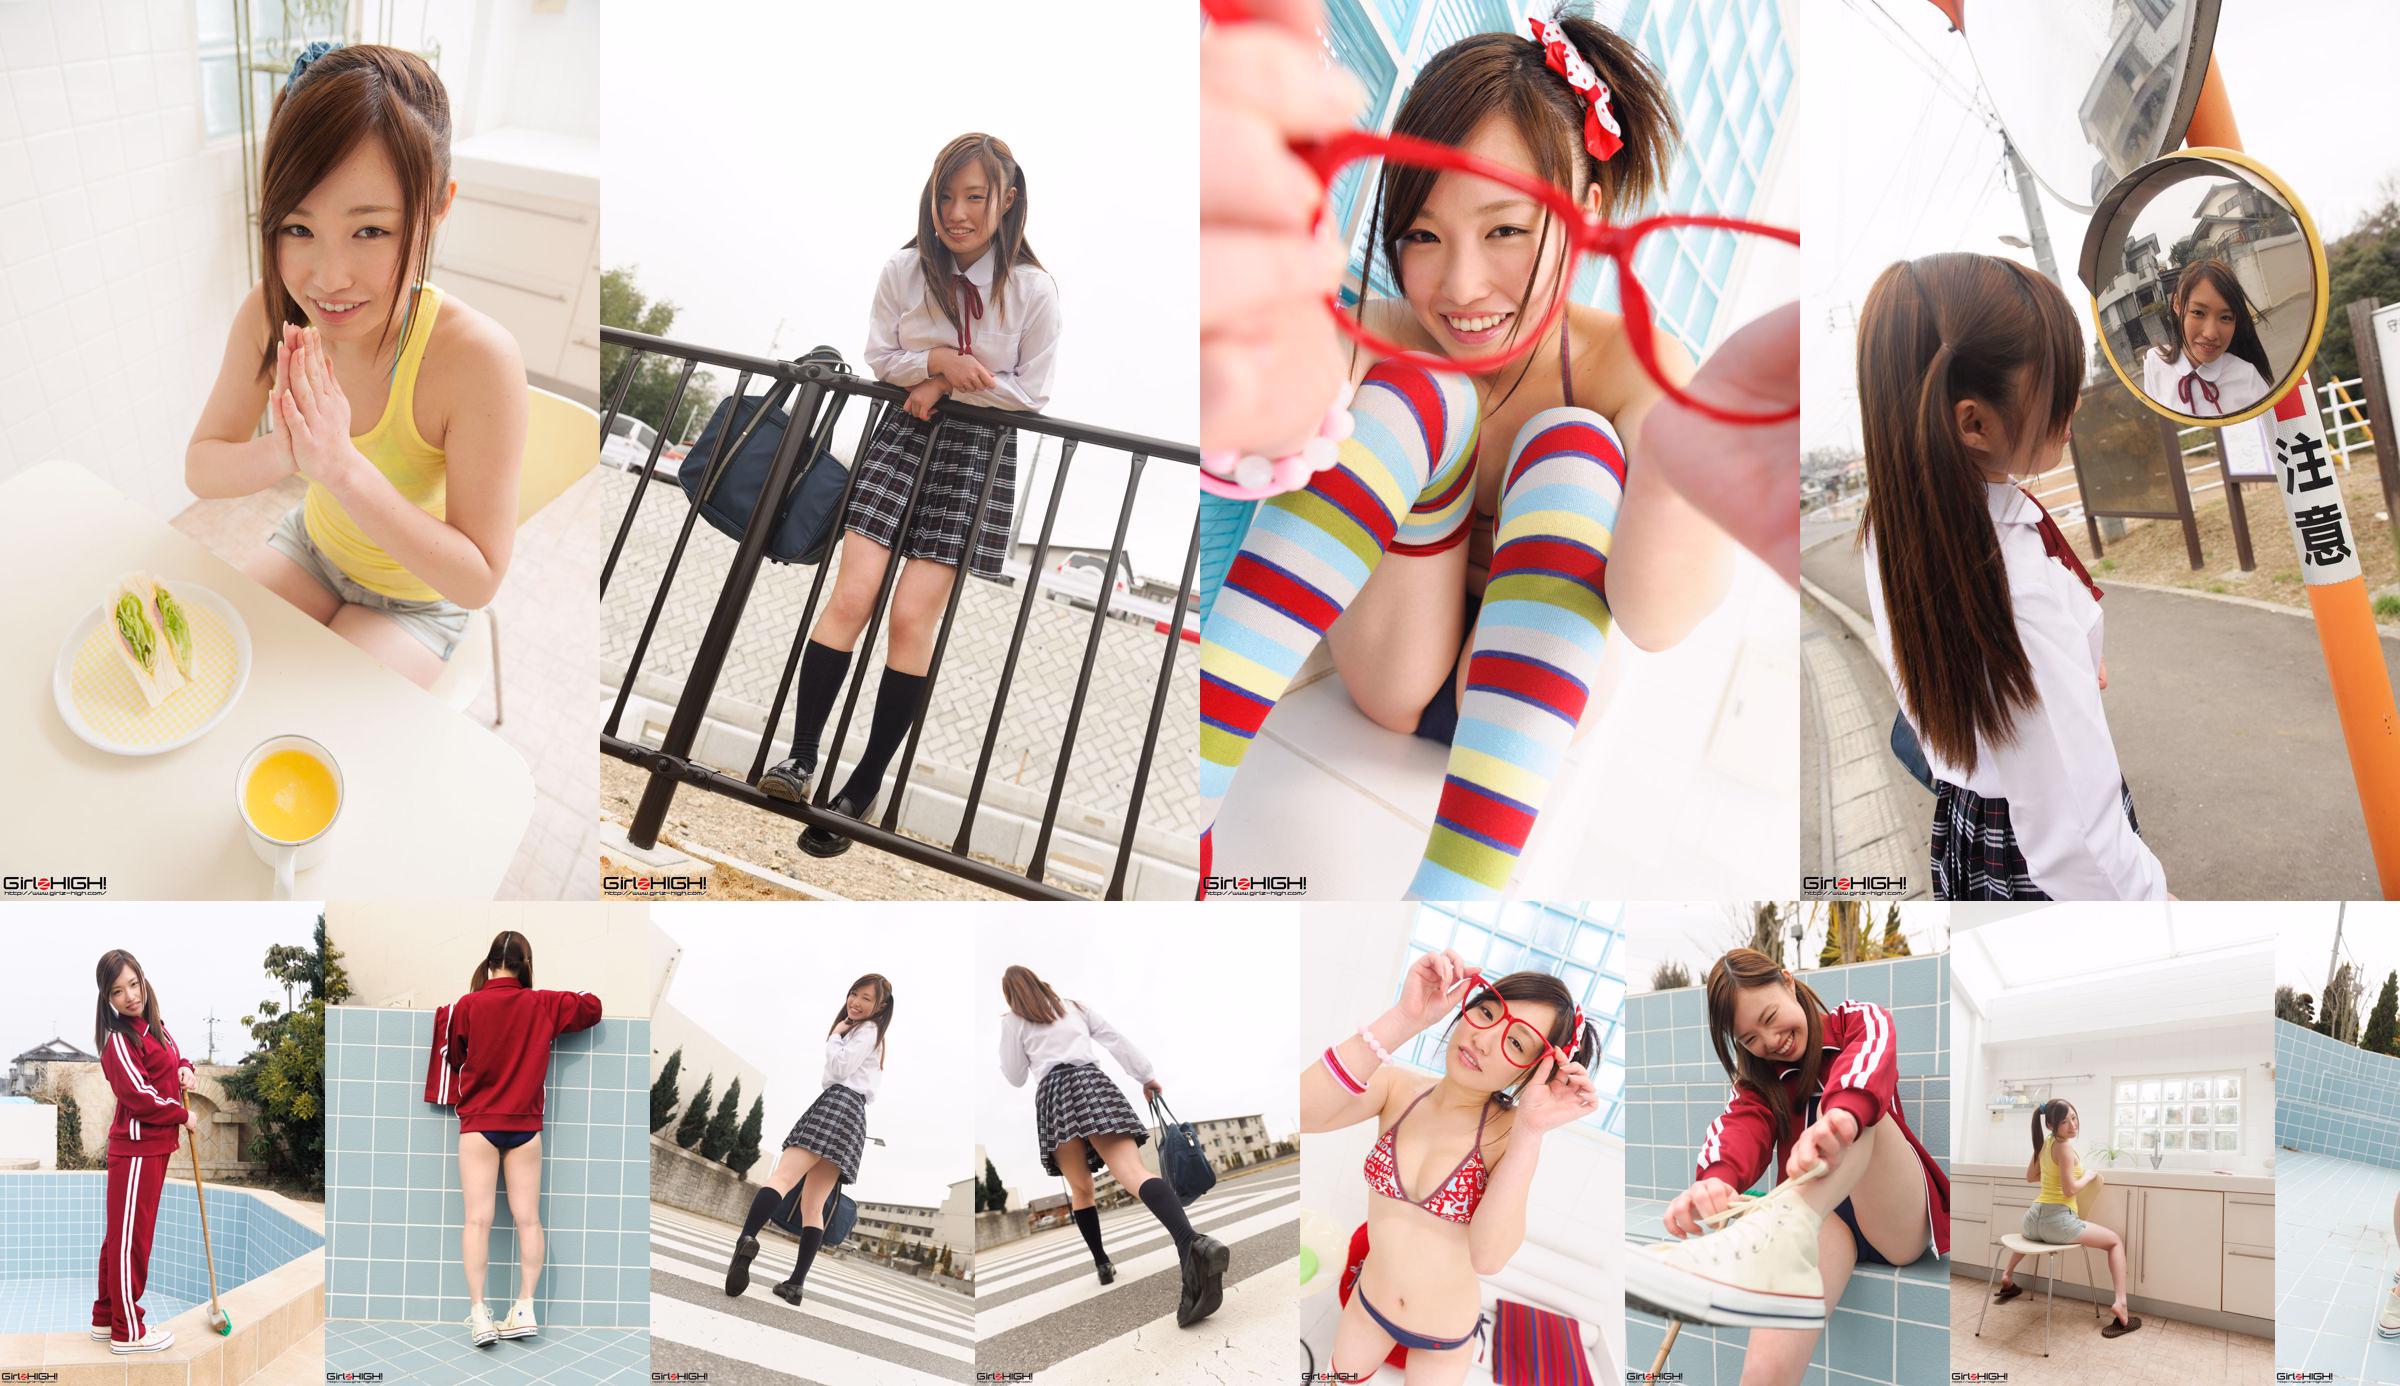 [Girlz-High] Yuno Natsuki Yuno Natsuki / Galeri Gravure Yuno Natsuki --g023 Photoset 02 No.e40eed Halaman 2